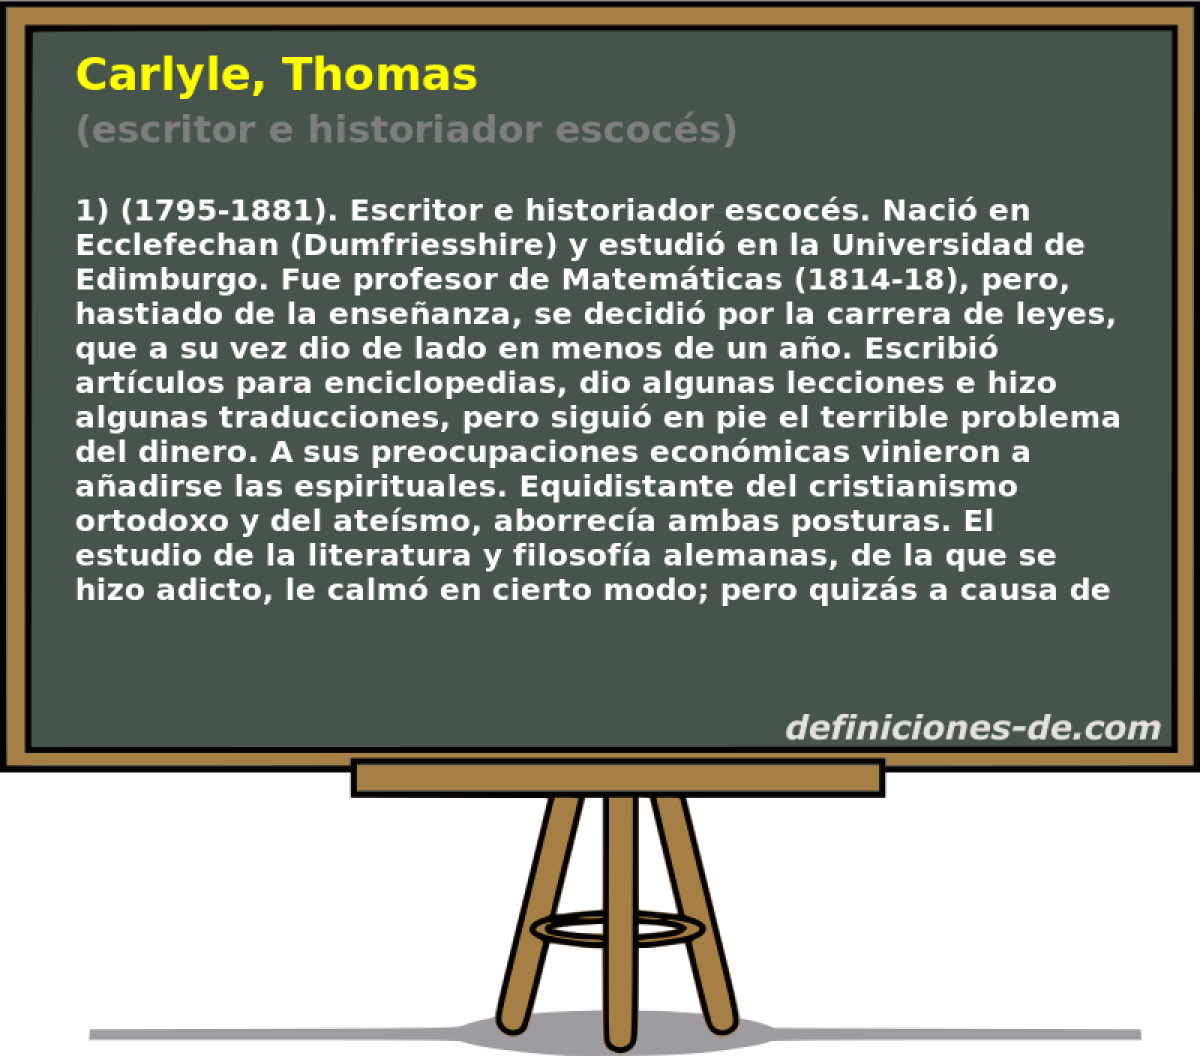 Carlyle, Thomas (escritor e historiador escocs)